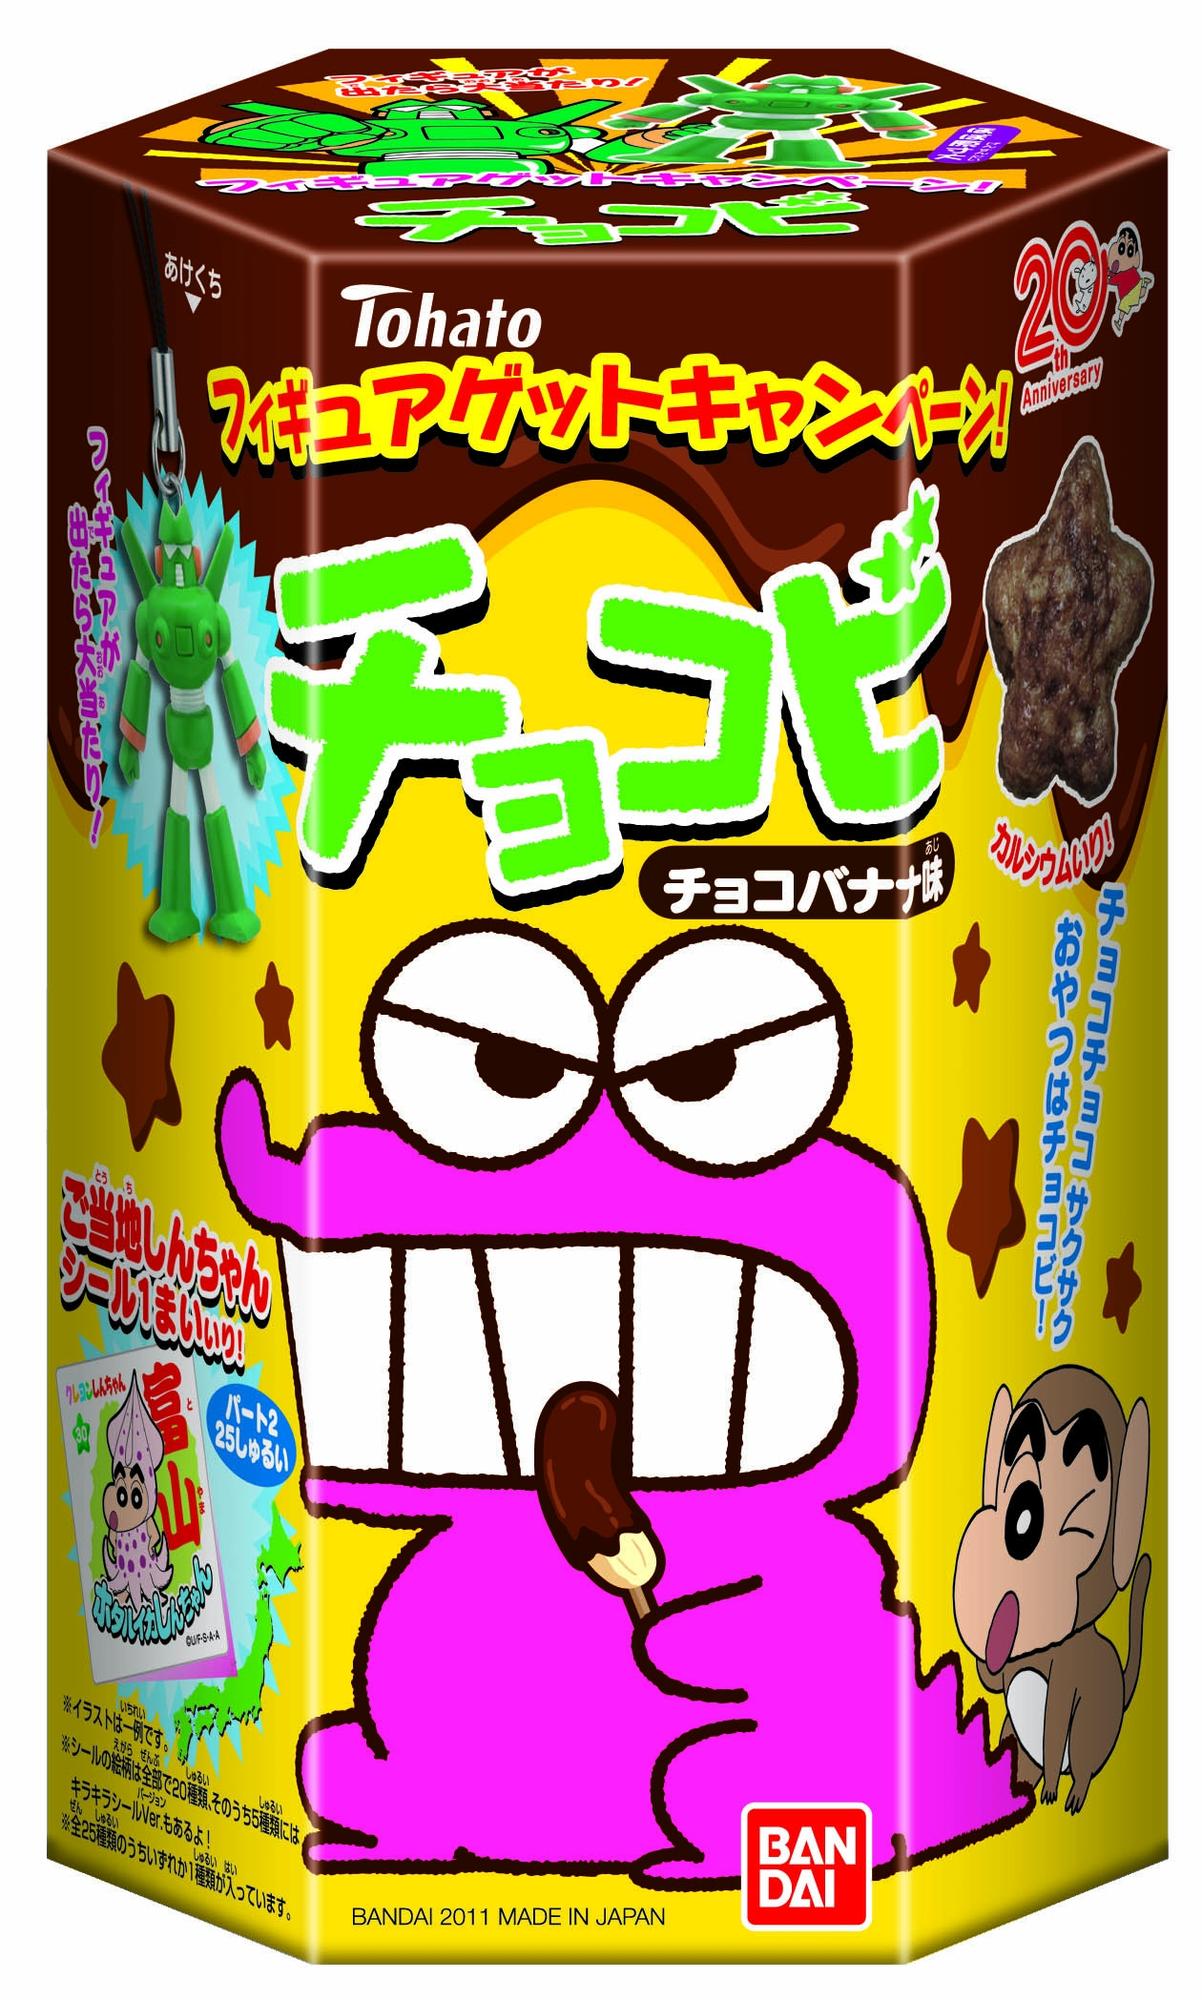 チョコビ チョコバナナ味 発売日 2011年7月 バンダイ キャンディ公式サイト